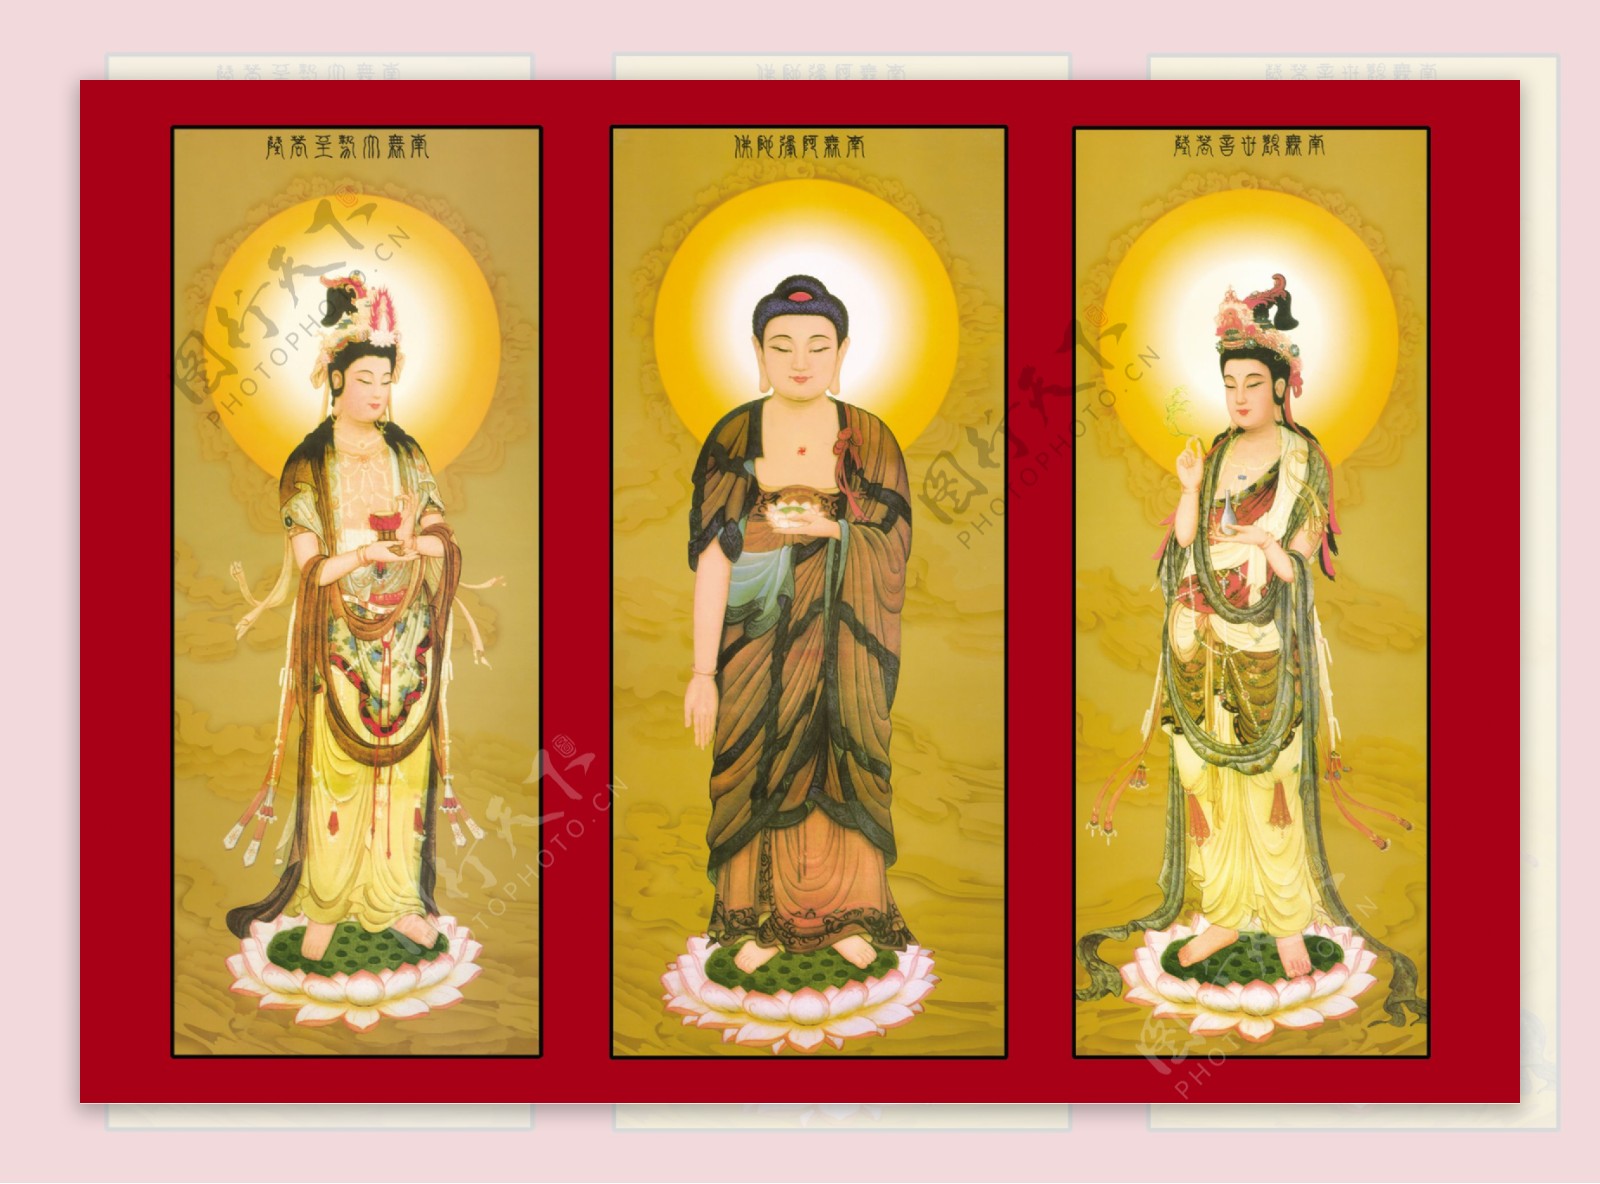 佛像佛西方三圣古典栩栩如生宗教信仰宗教佛光佛光普照古代屋内挂画图片